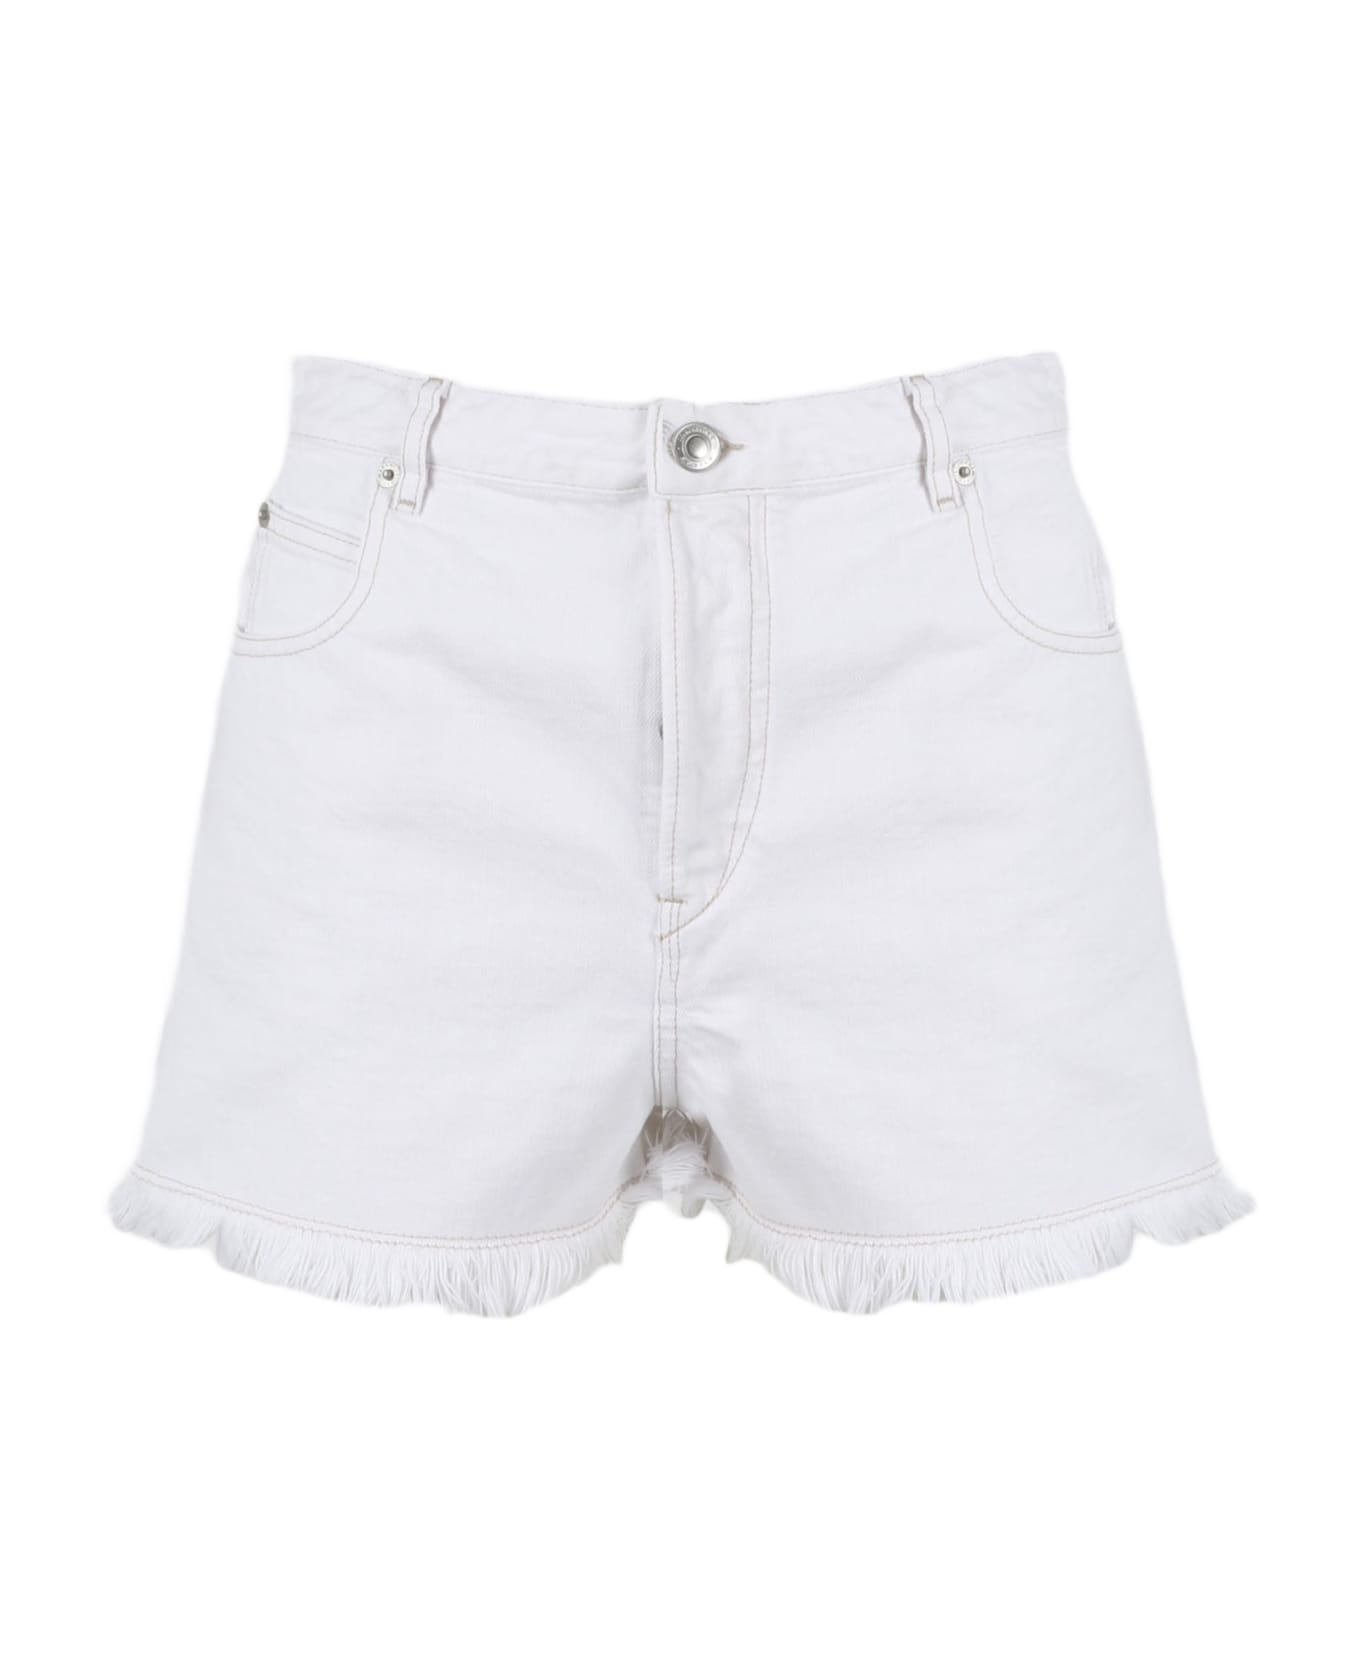 Marant Étoile Lesia Denim Shorts - White ショートパンツ